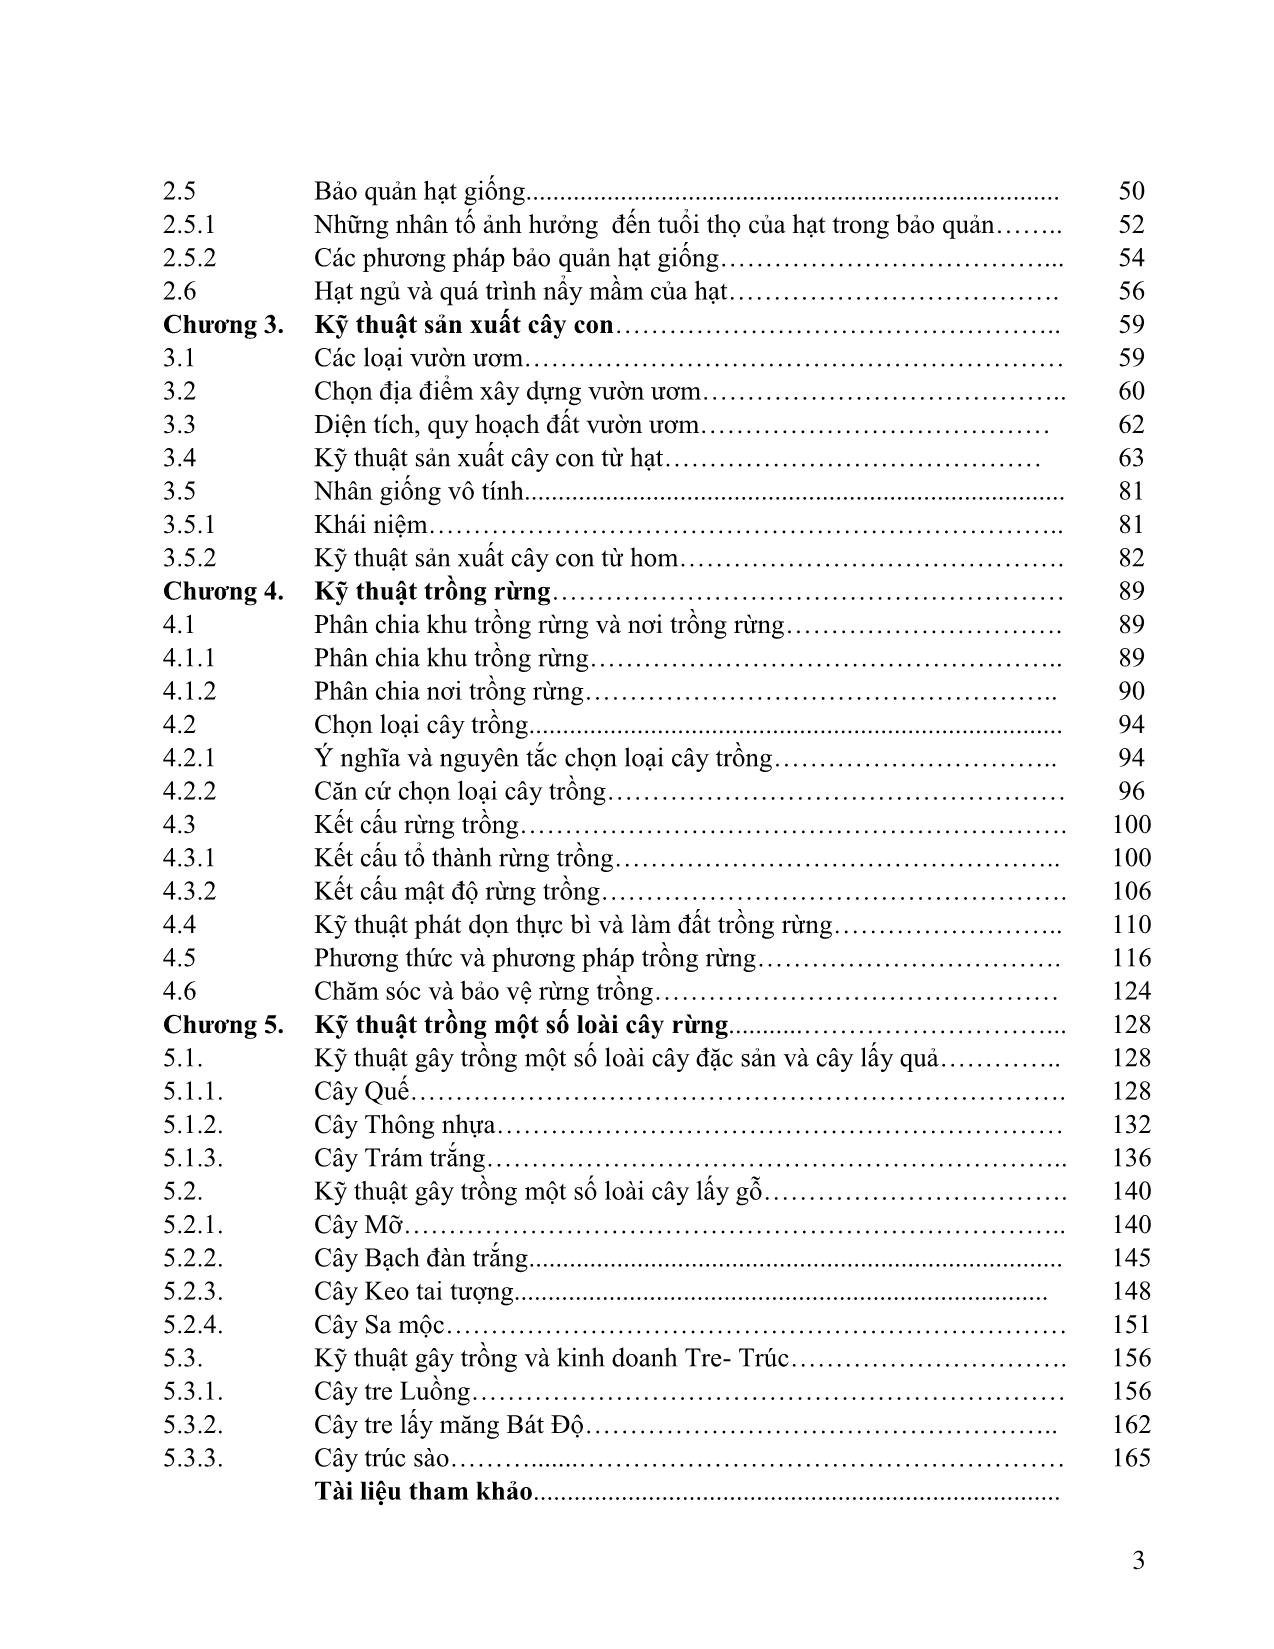 Giáo trình Lâm sinh tổng hợp trang 4